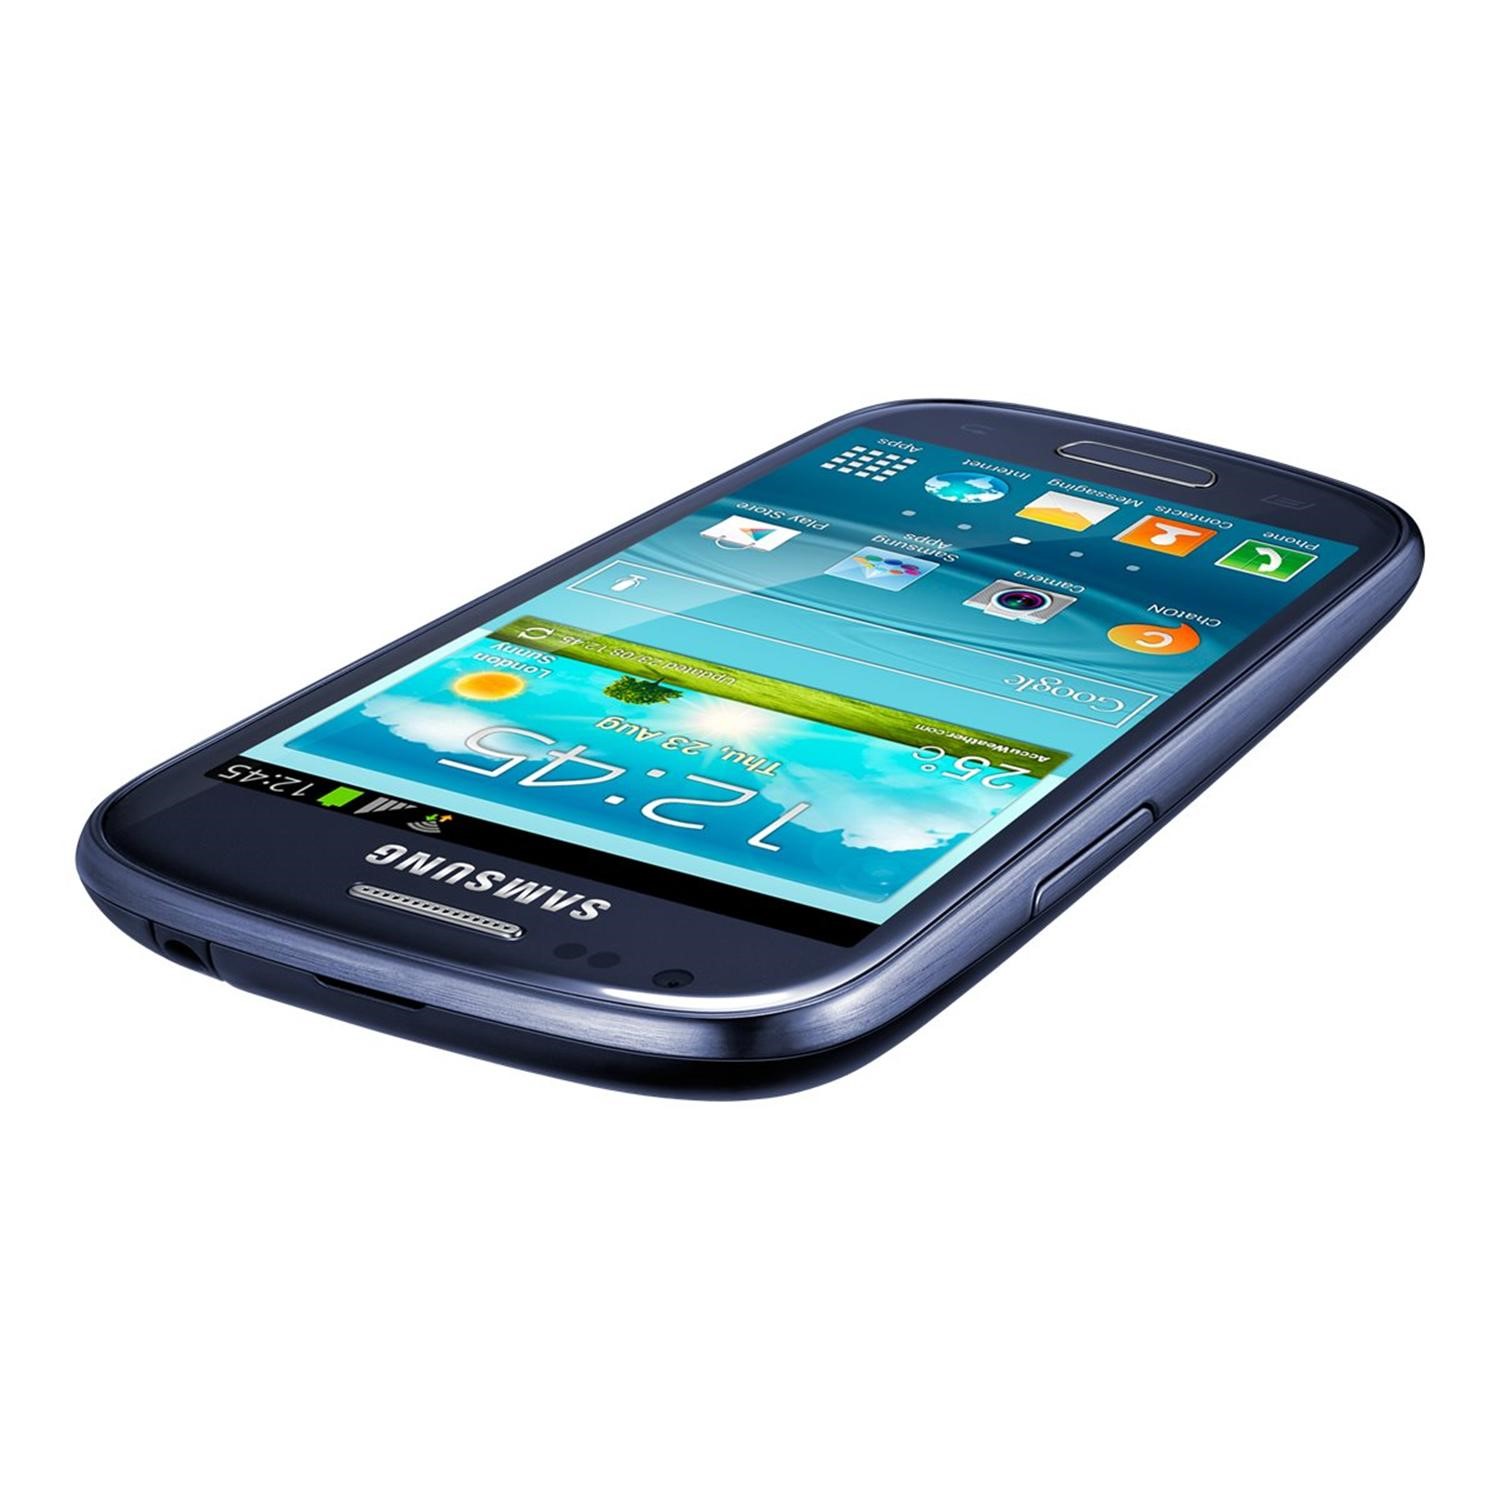 Galaxy 3 8.0. Samsung Galaxy gt-i8190. Смартфон Samsung Galaxy s III Mini gt-i8190 8gb. Samsung gt i8200. Galaxy s III Mini gt-i8200.